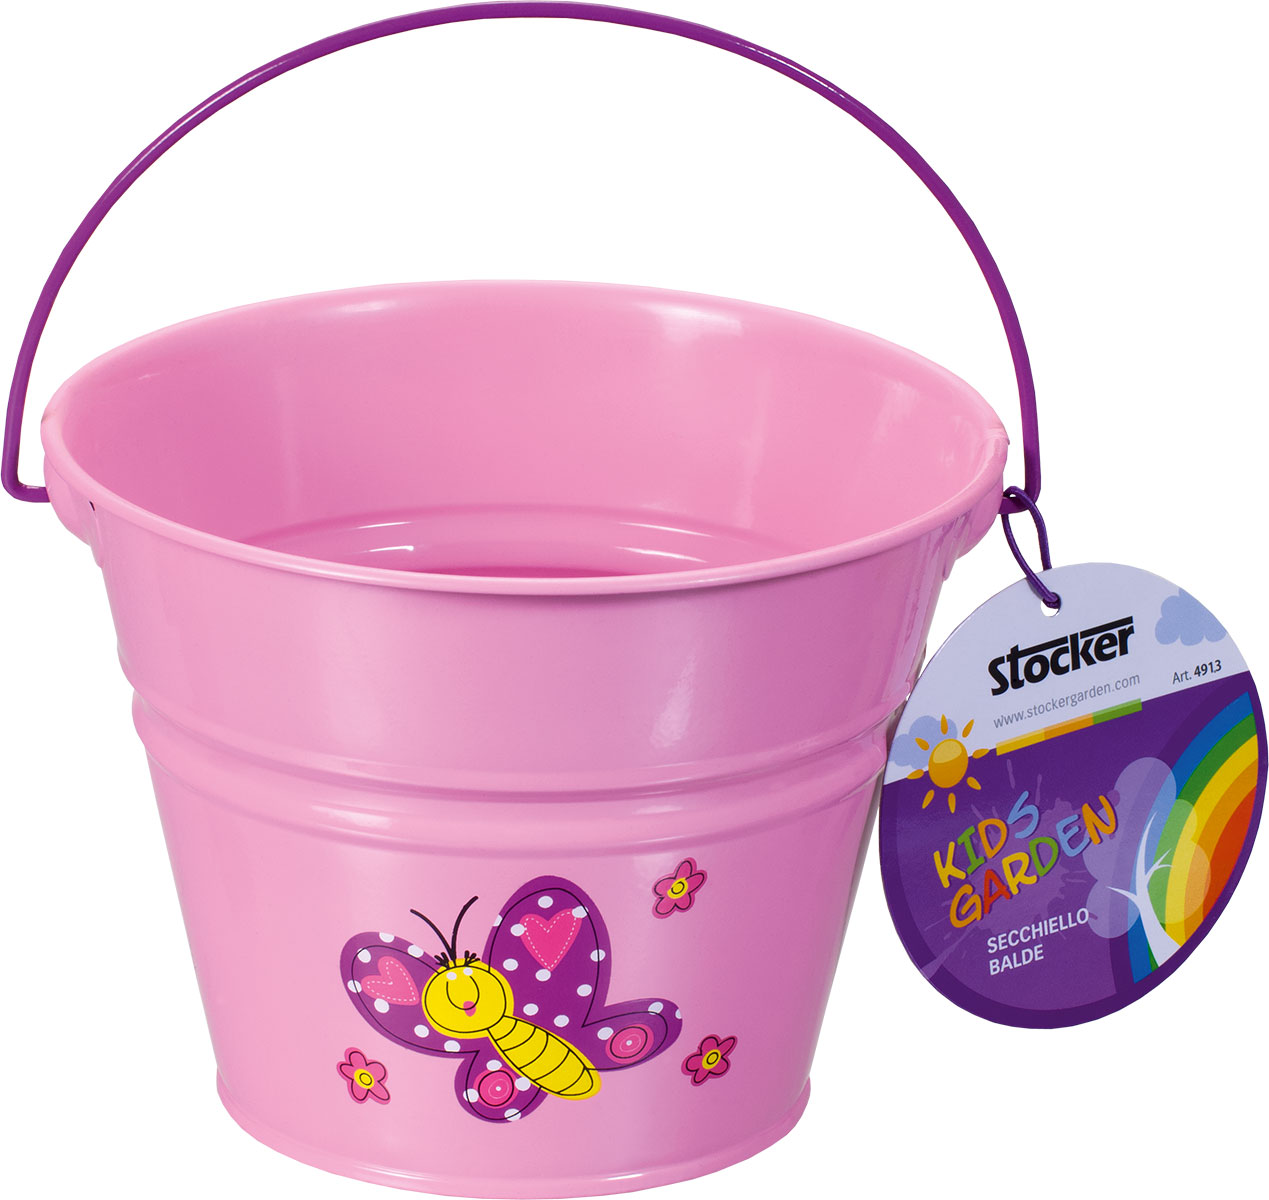 Children's bucket metal pink